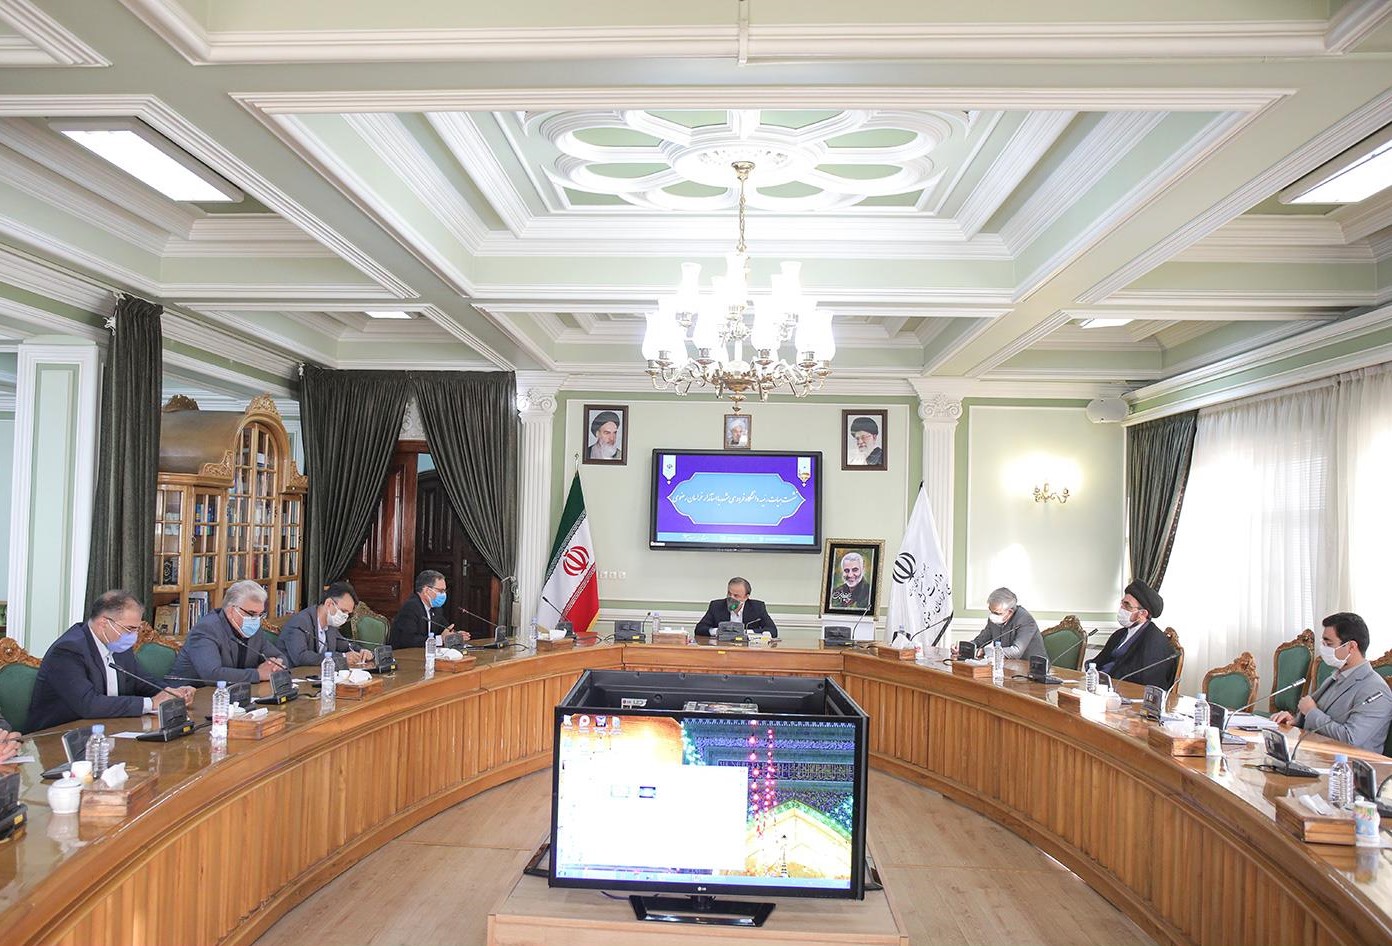 اجرای مثلث توسعه اقتصادی و فرهنگی در خراسان رضوی با هدف دست یابی به توسعه پایدار